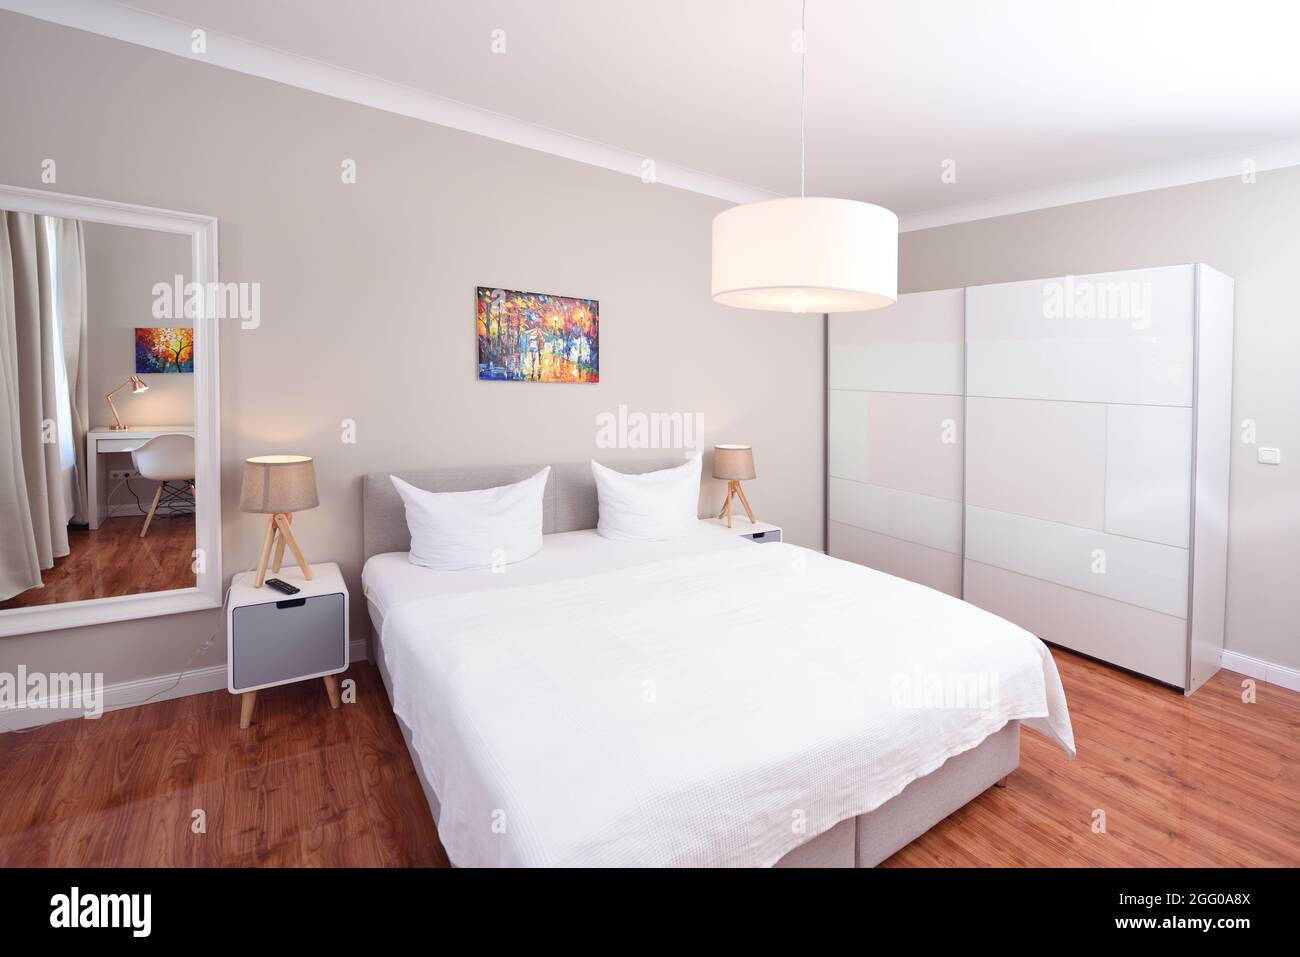 Heim Schlafzimmer Innenraum weißes Bett Holzboden Tür zum Flur bunte Bild Lampen Spiegel Schreibtisch Ecke Stockfoto